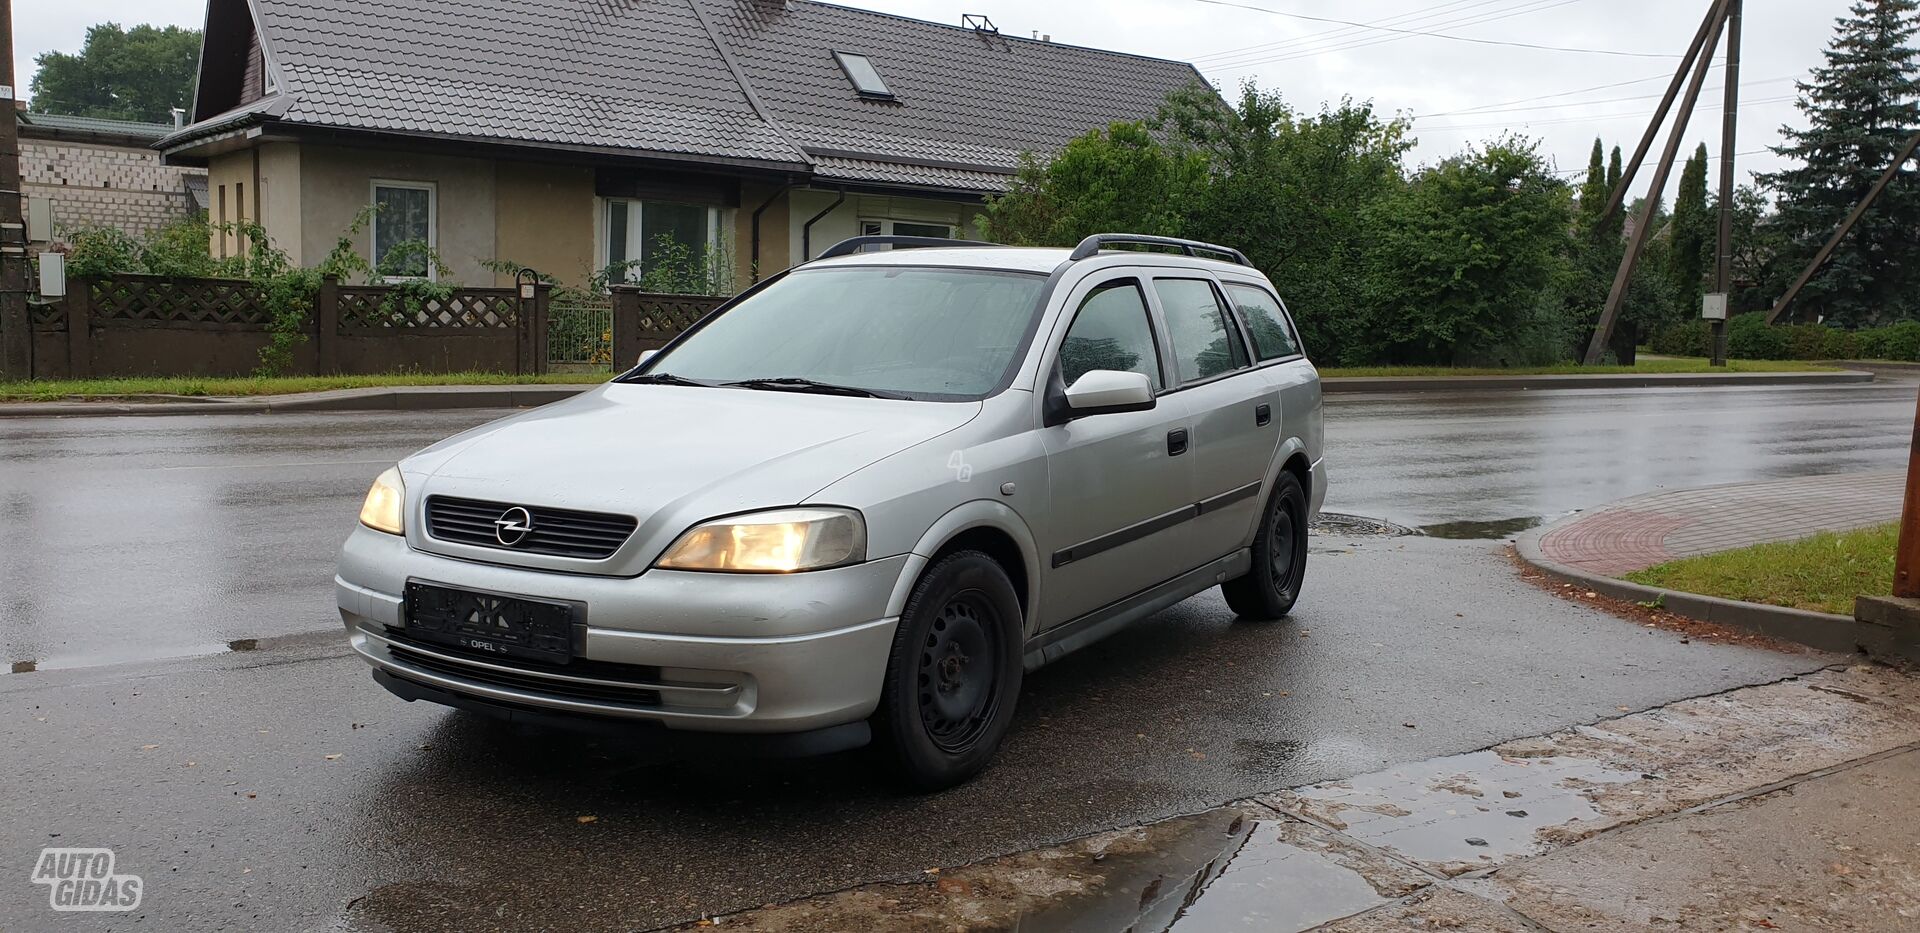 Opel Astra I 60 kW, kablys 1998 г запчясти